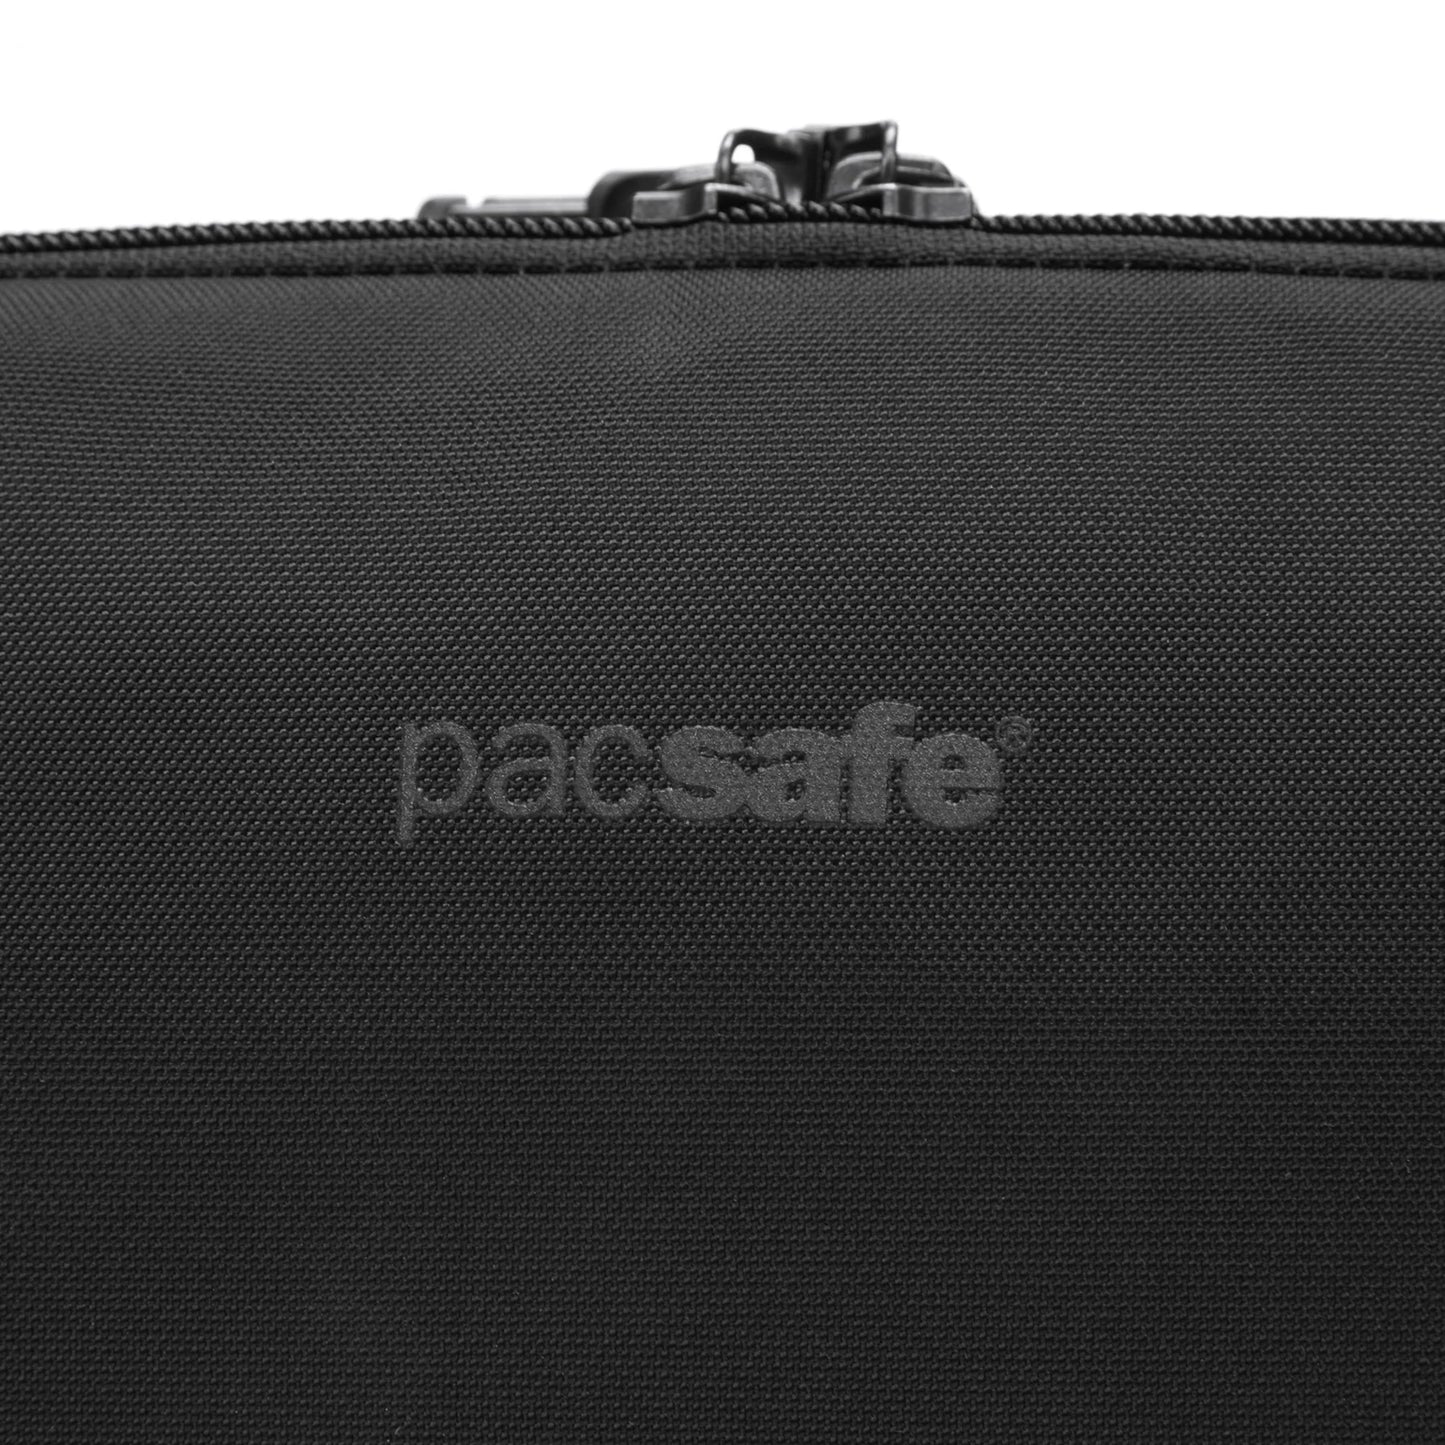 حزمة حبال Pacsafe Metrosafe X المضادة للسرقة